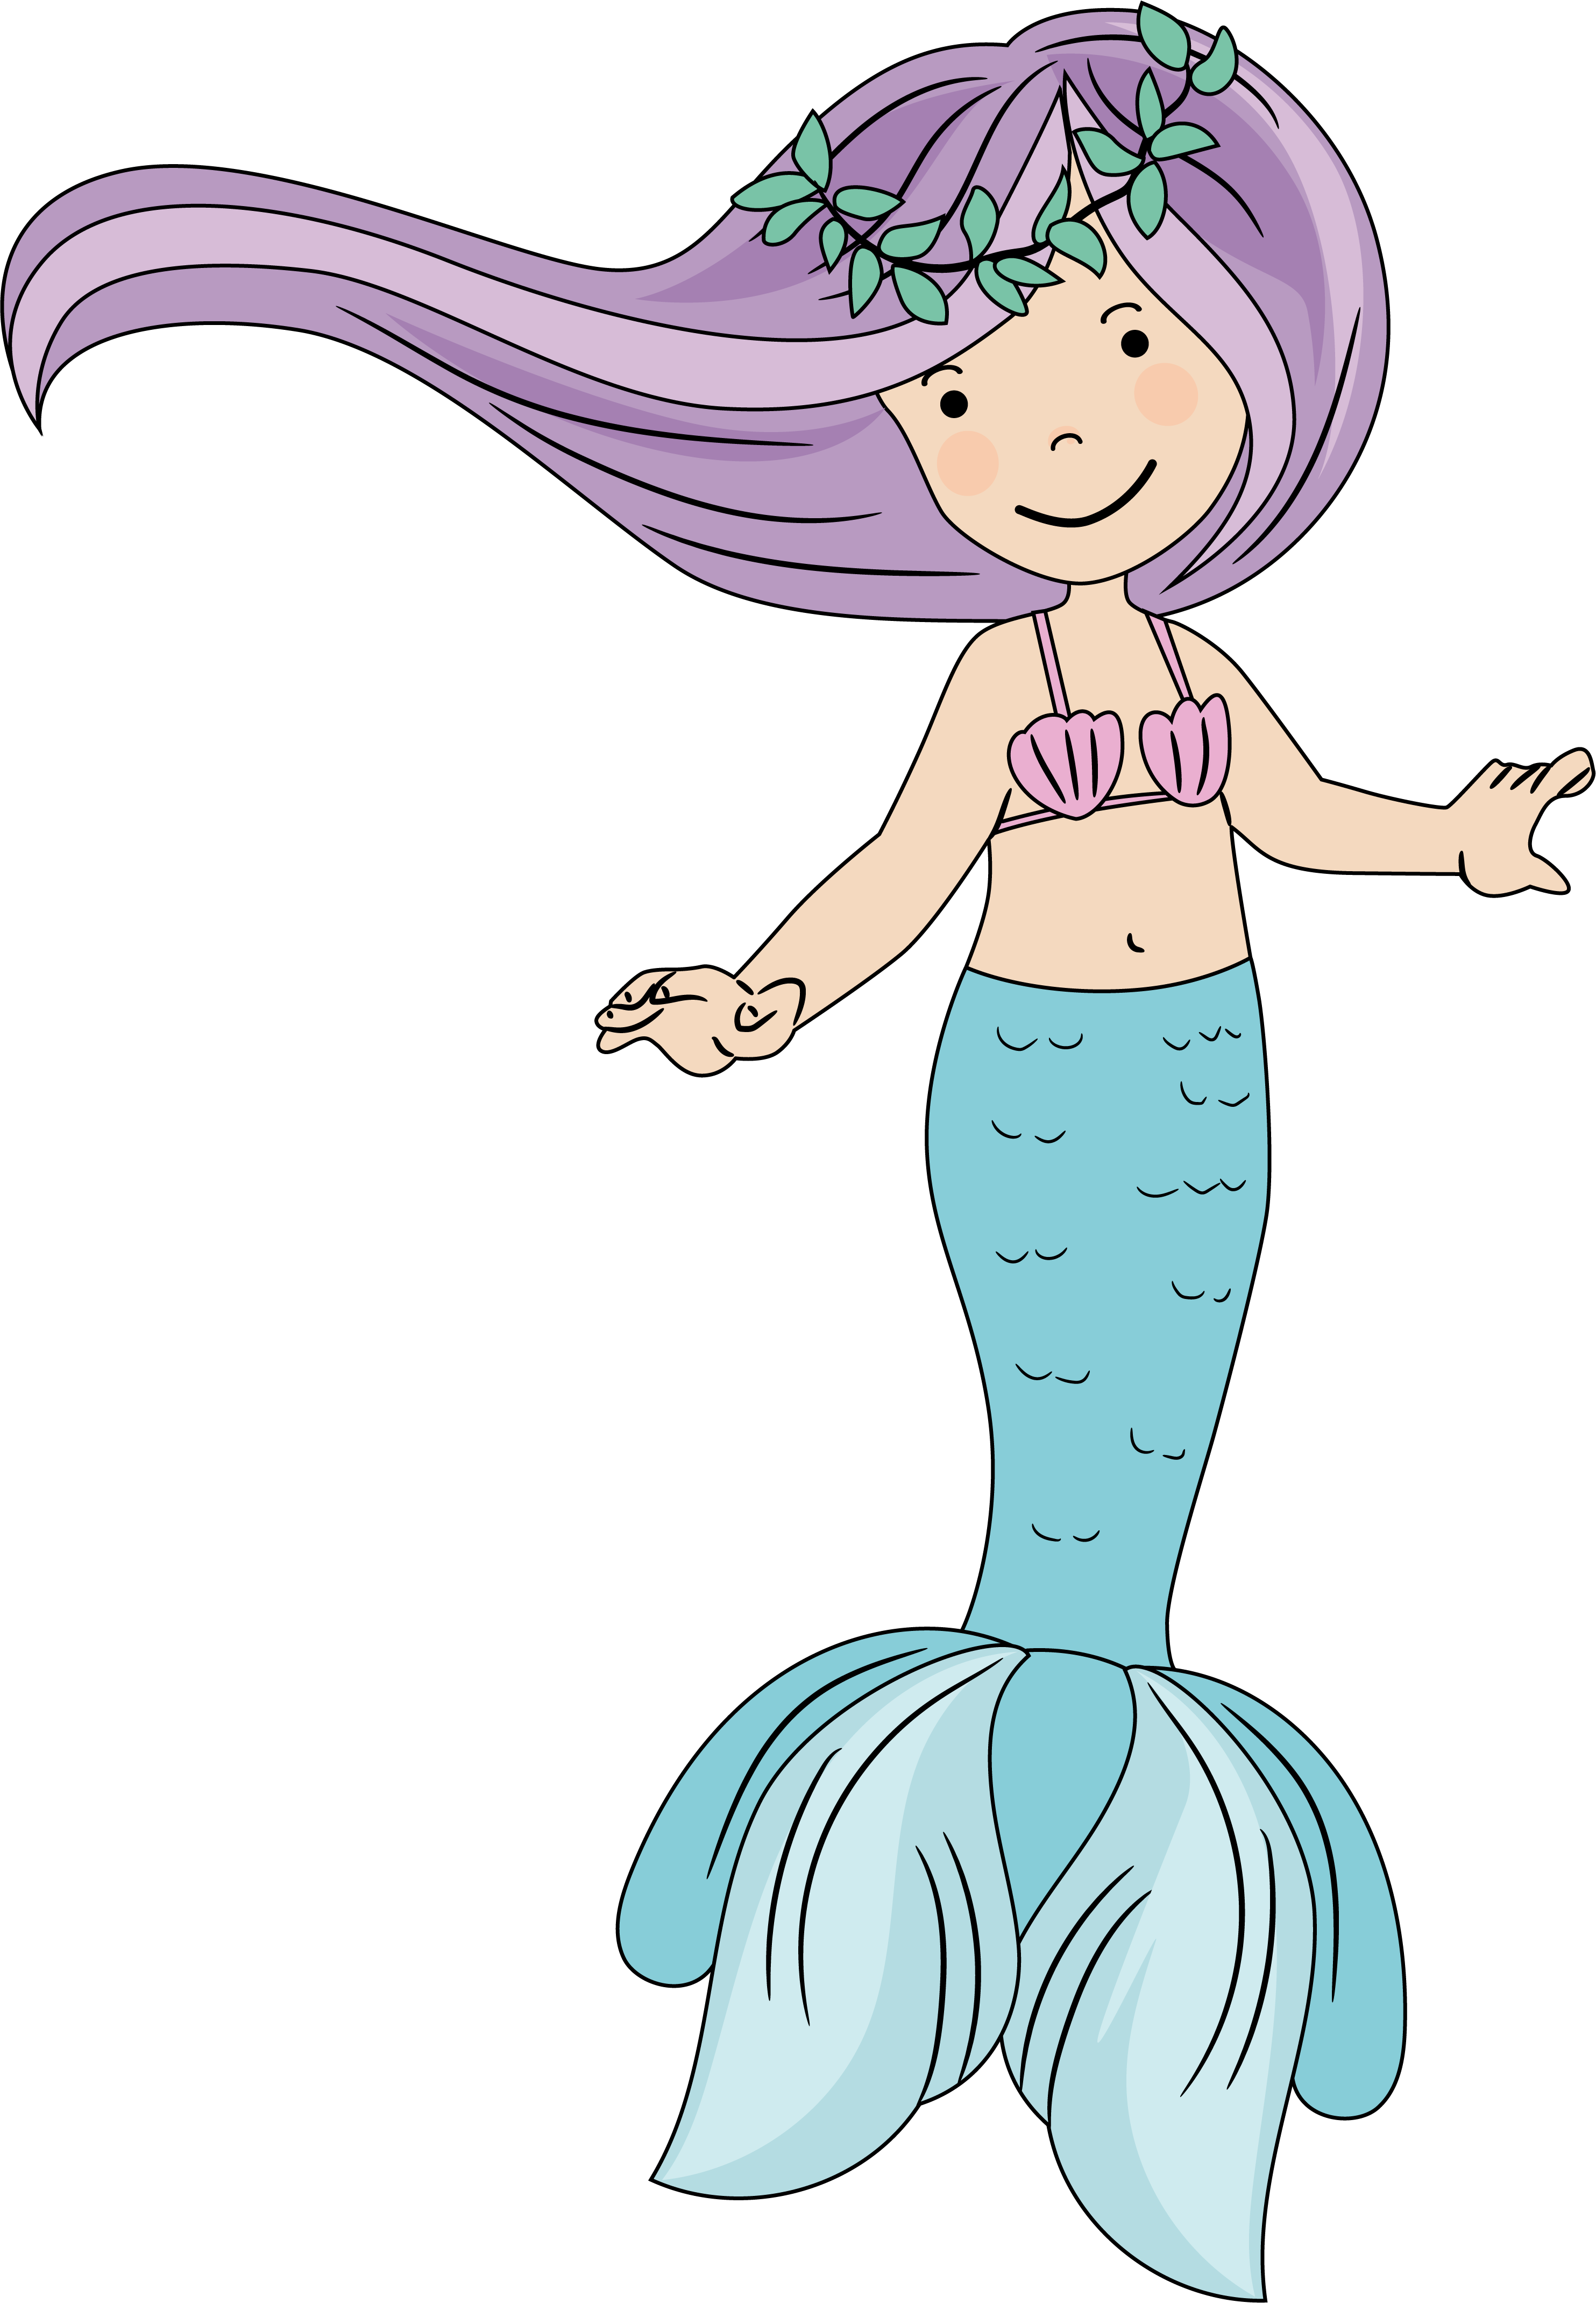 Standing mermaid with purple hair.